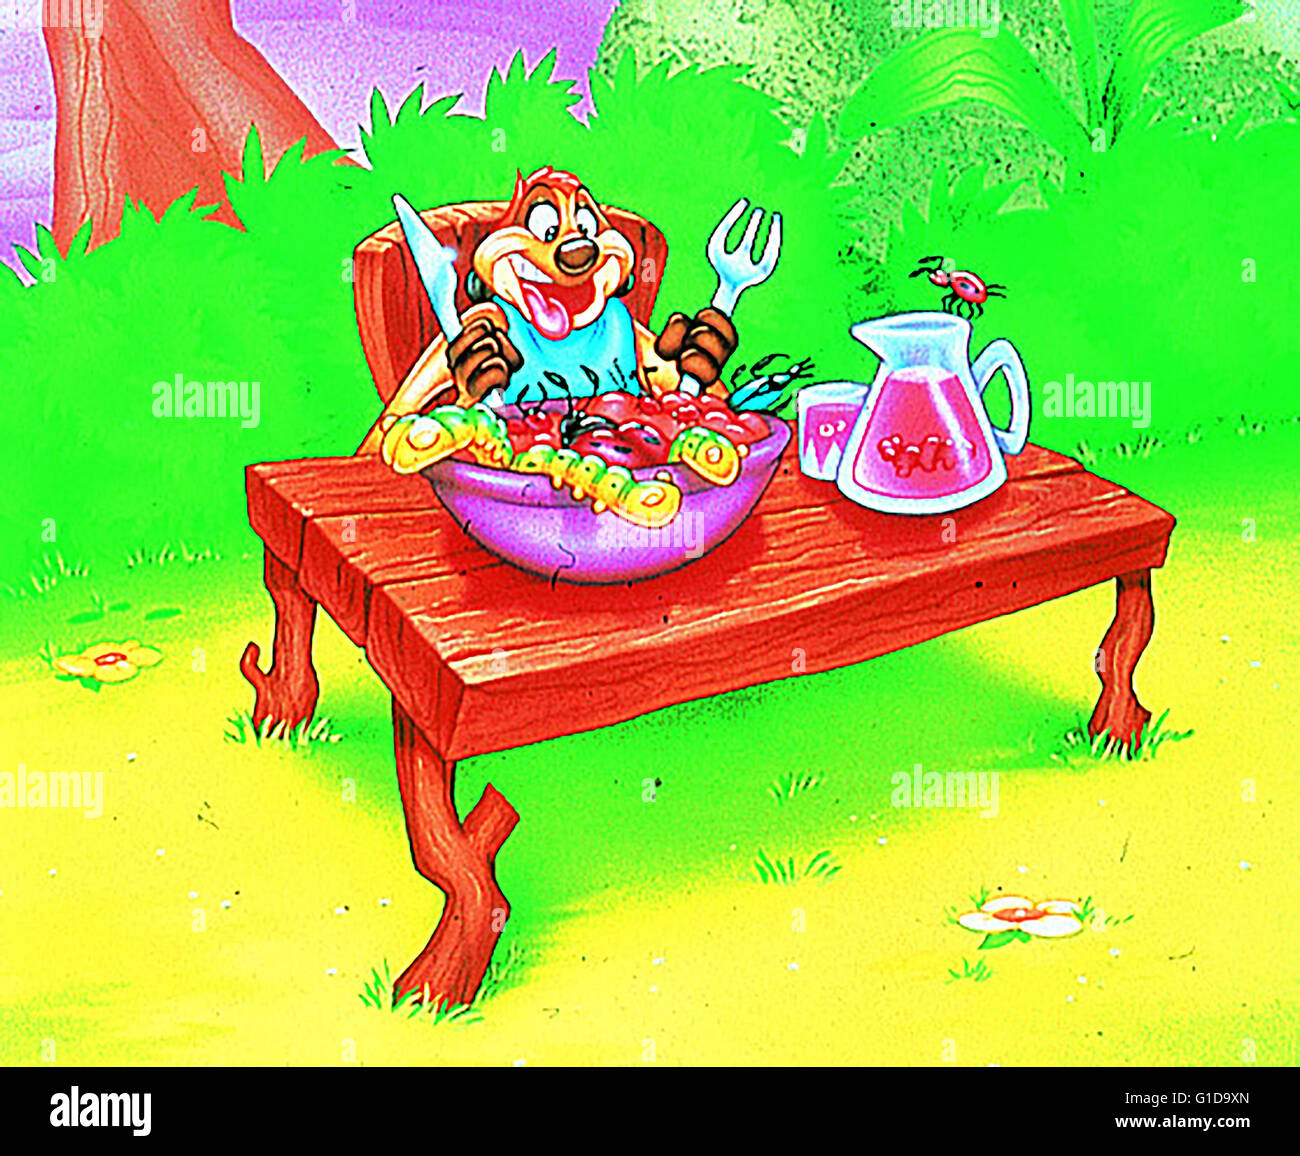 Rund um die Welt mit Timon & Pumbaa / Zeichentrickfigur, Stock Photo